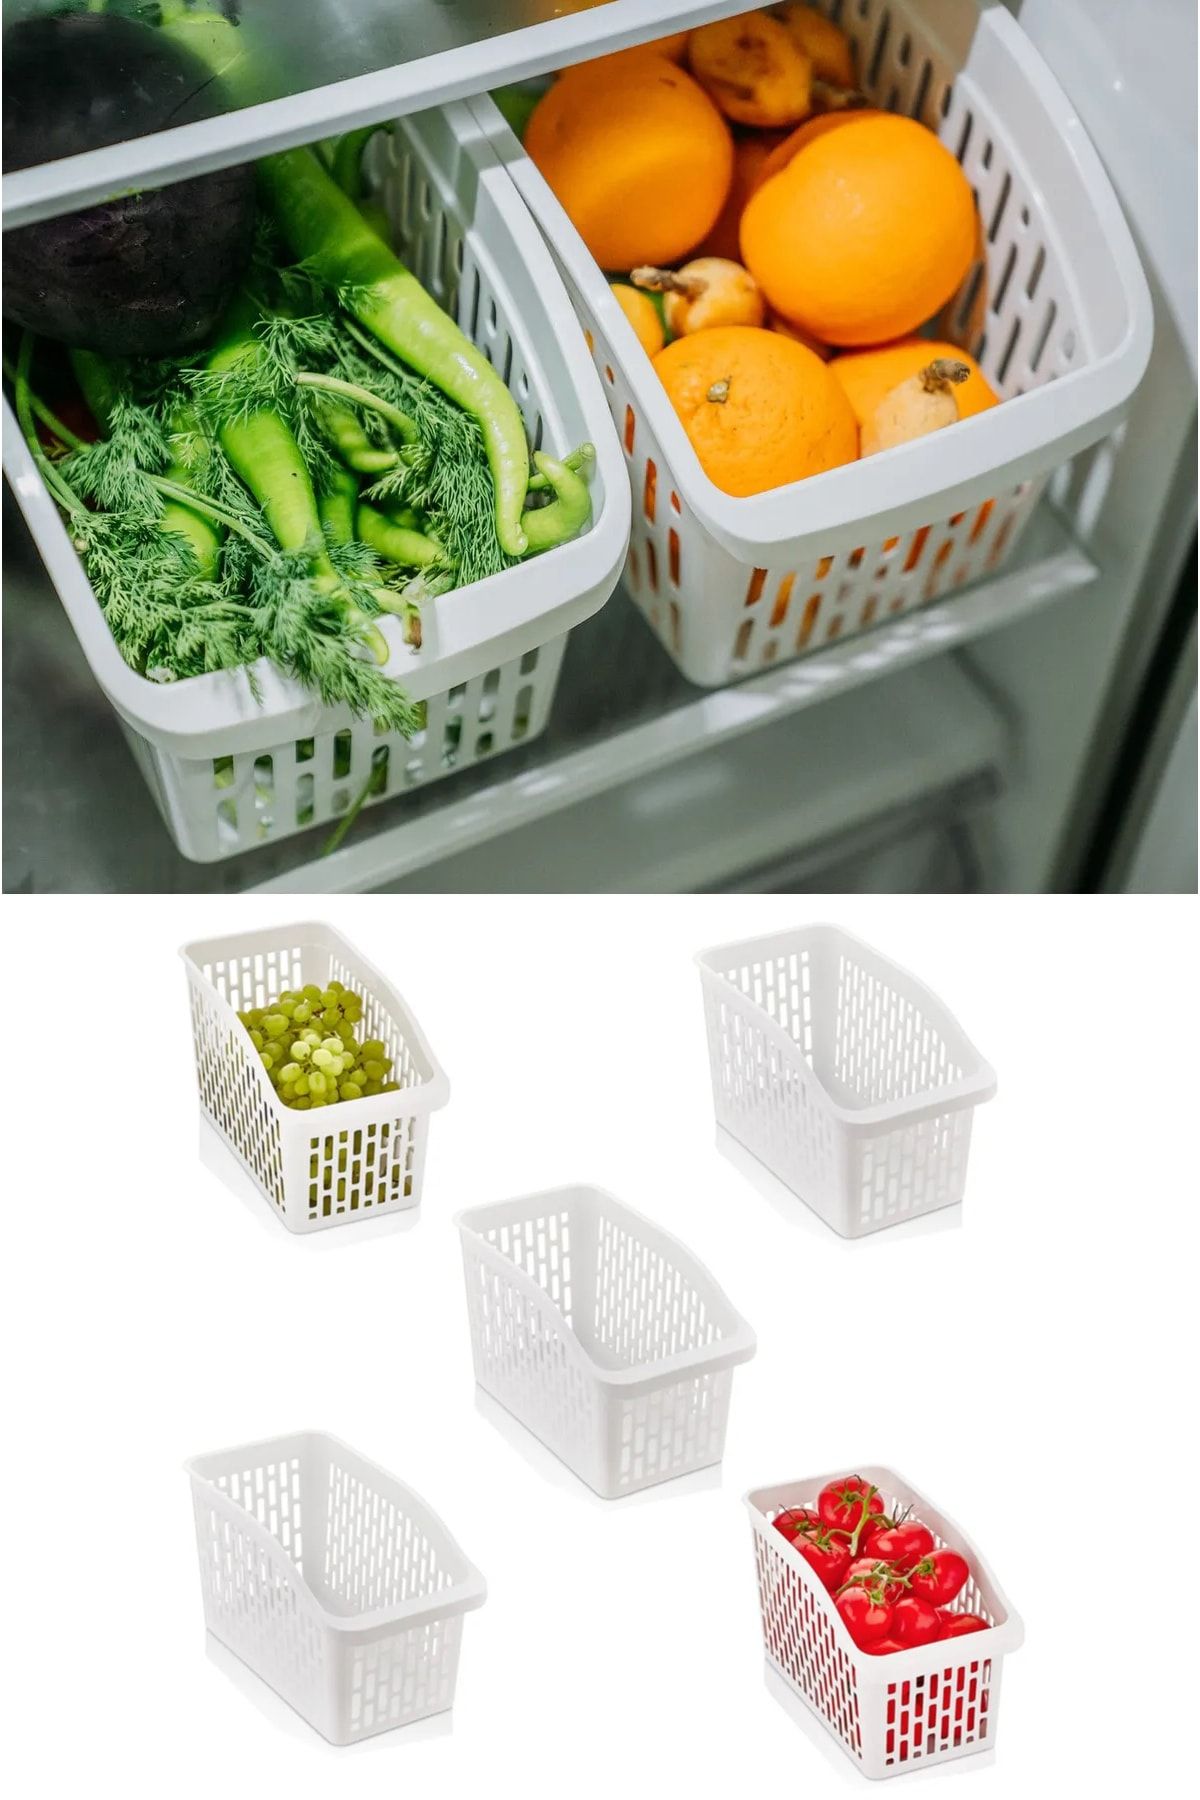 KRM HOME 5 Adet Xxl Geniş Buzdolabı Içi Düzenleyici Sebze Meyve Sepeti Mutfak Banyo Tezgah Organizer